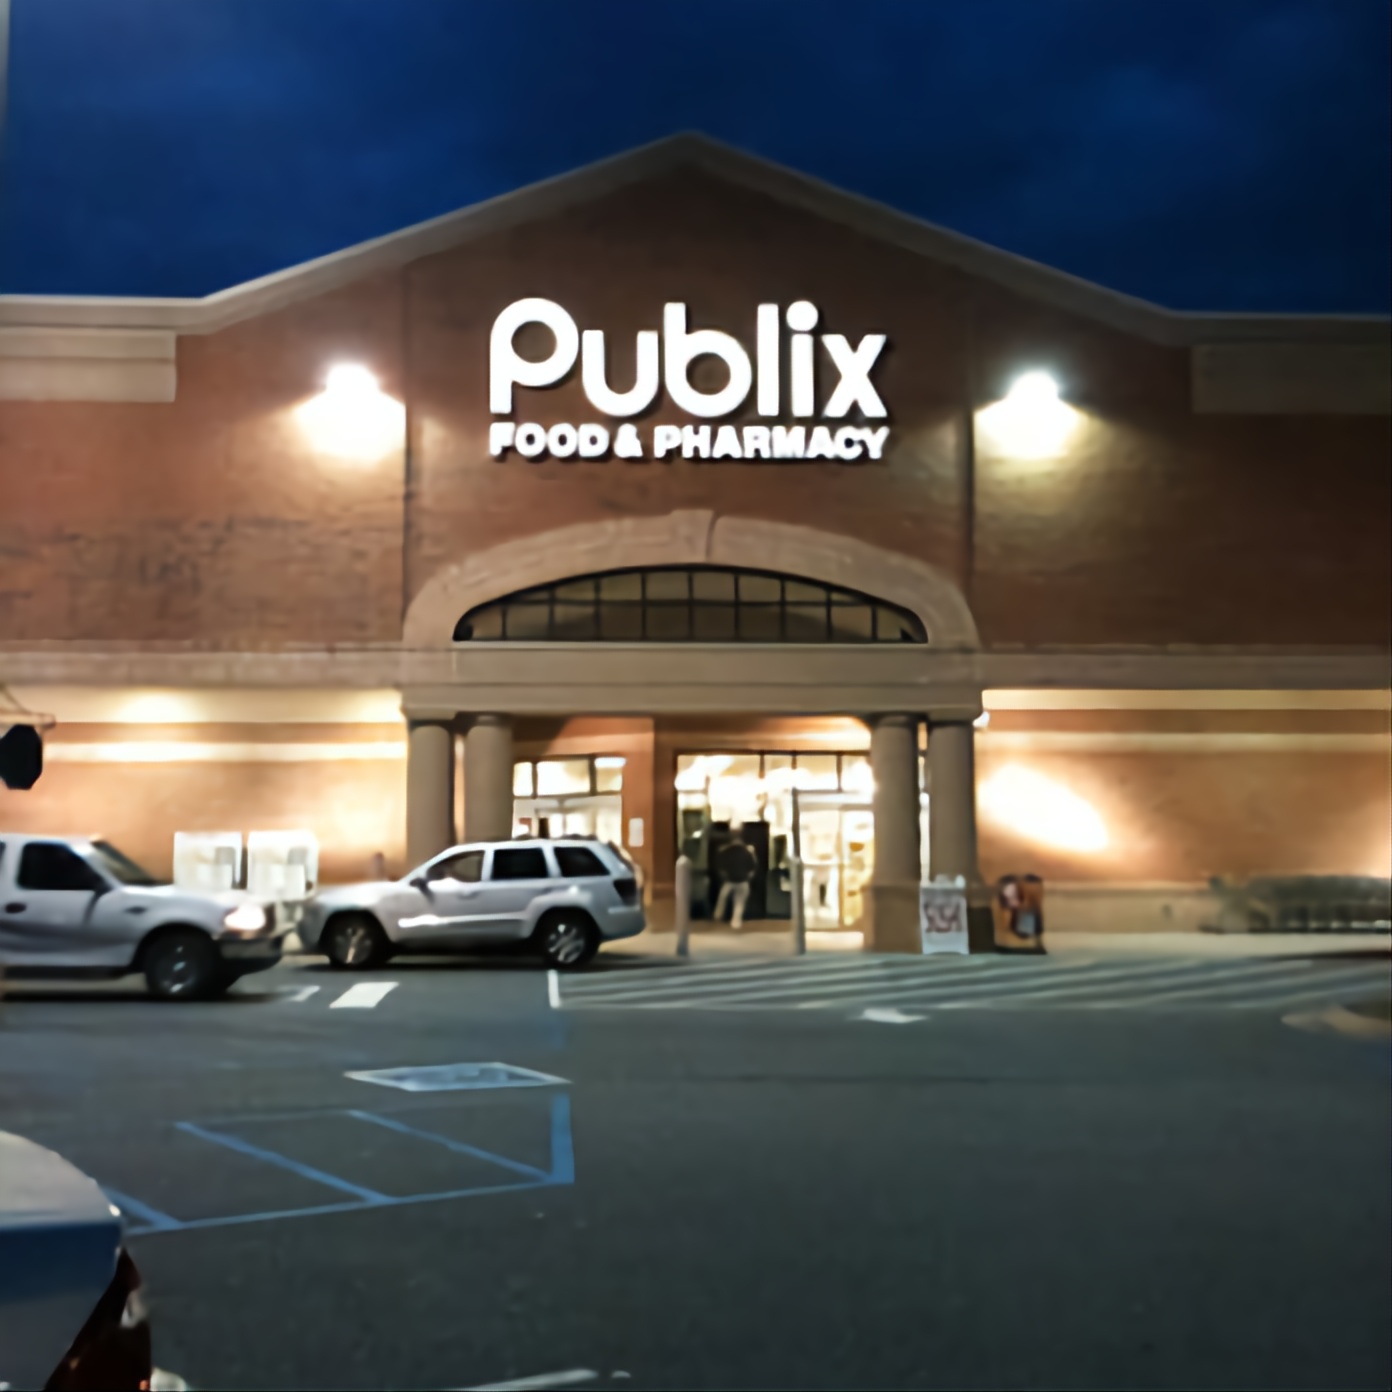 Publix Pharmacy at Laurel Canyon Village